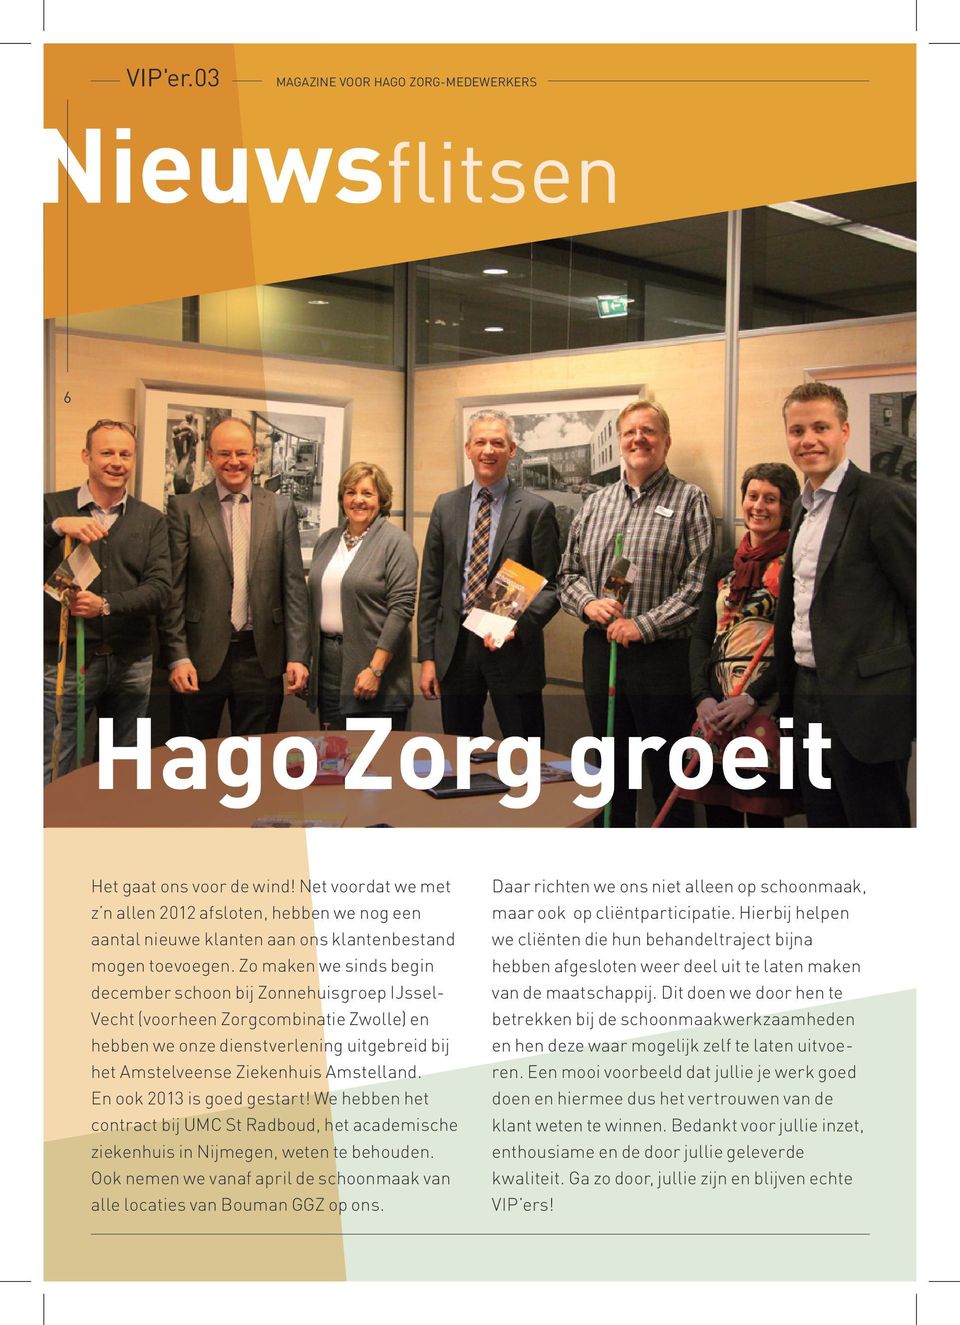 En ook 2013 is goed gestart! We hebben het contract bij UMC St Radboud, het academische ziekenhuis in Nijmegen, weten te behouden.